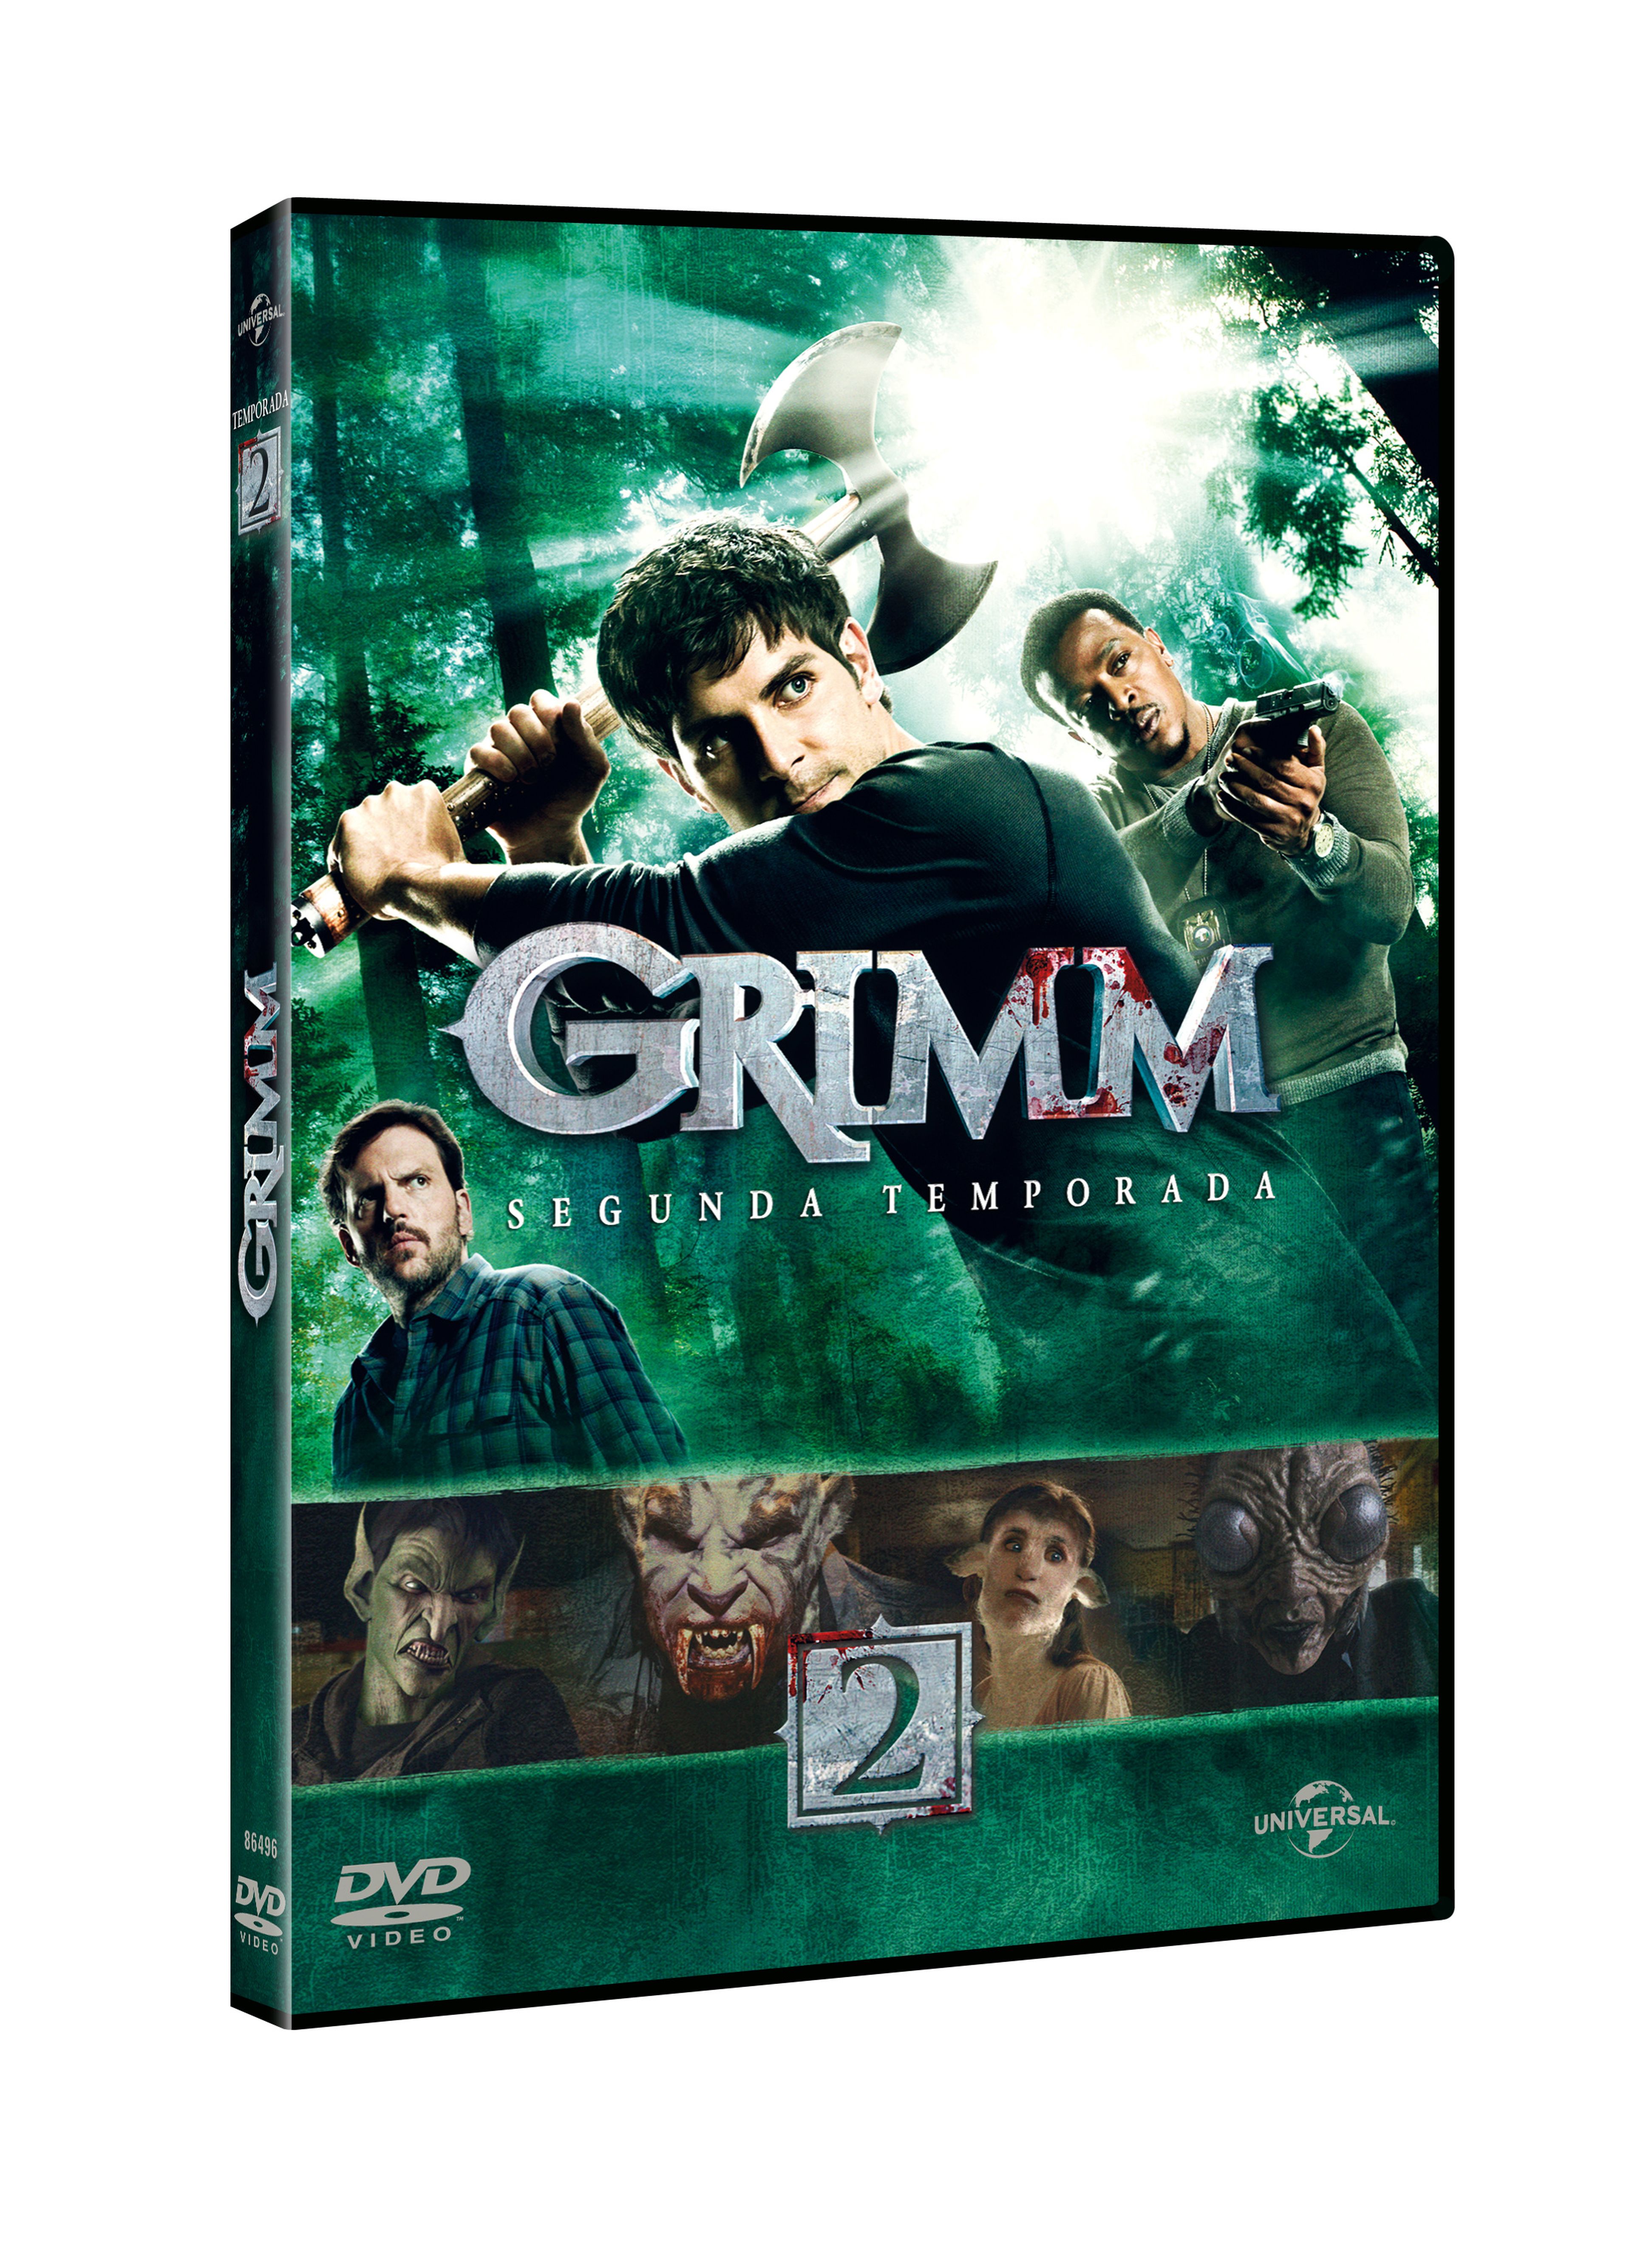 Concurso Grimm: ¡Sorteamos 3 DVDs de la 2ª temporada!